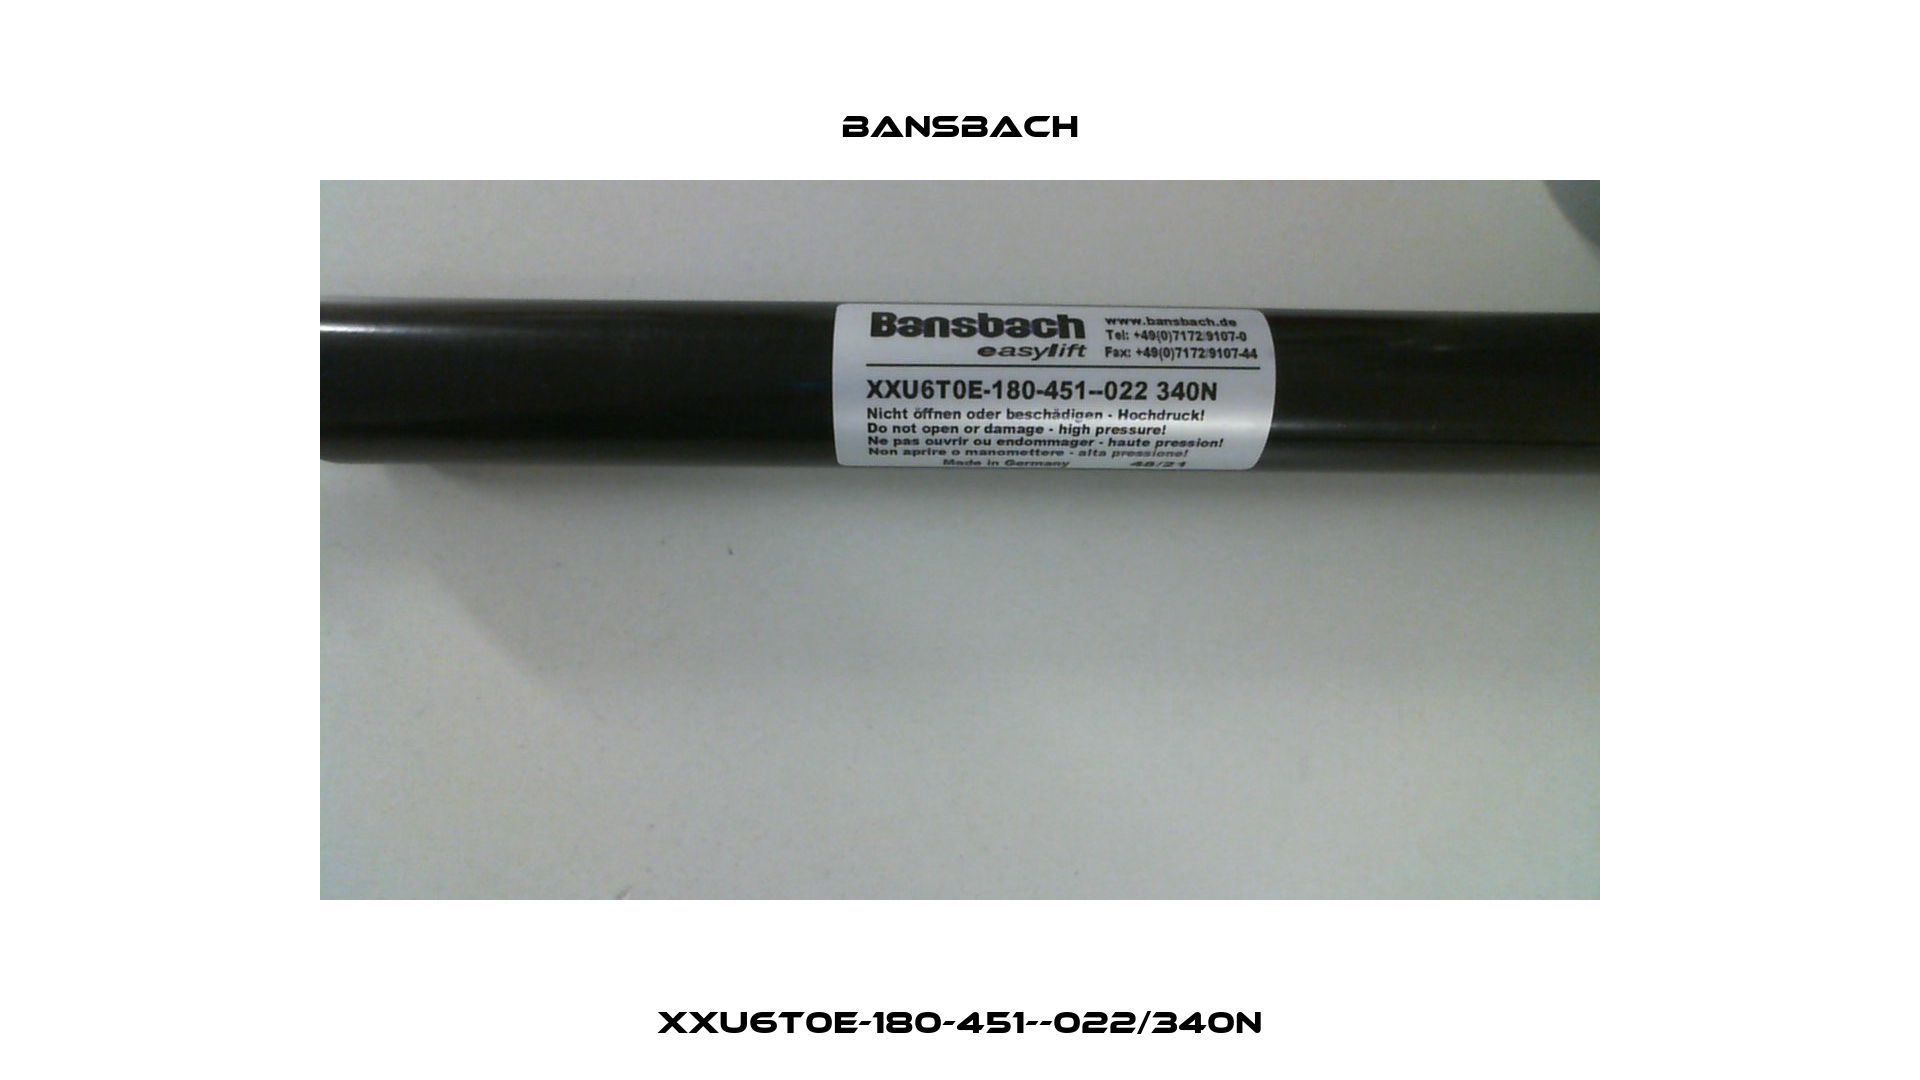 XXU6T0E-180-451--022/340N Bansbach